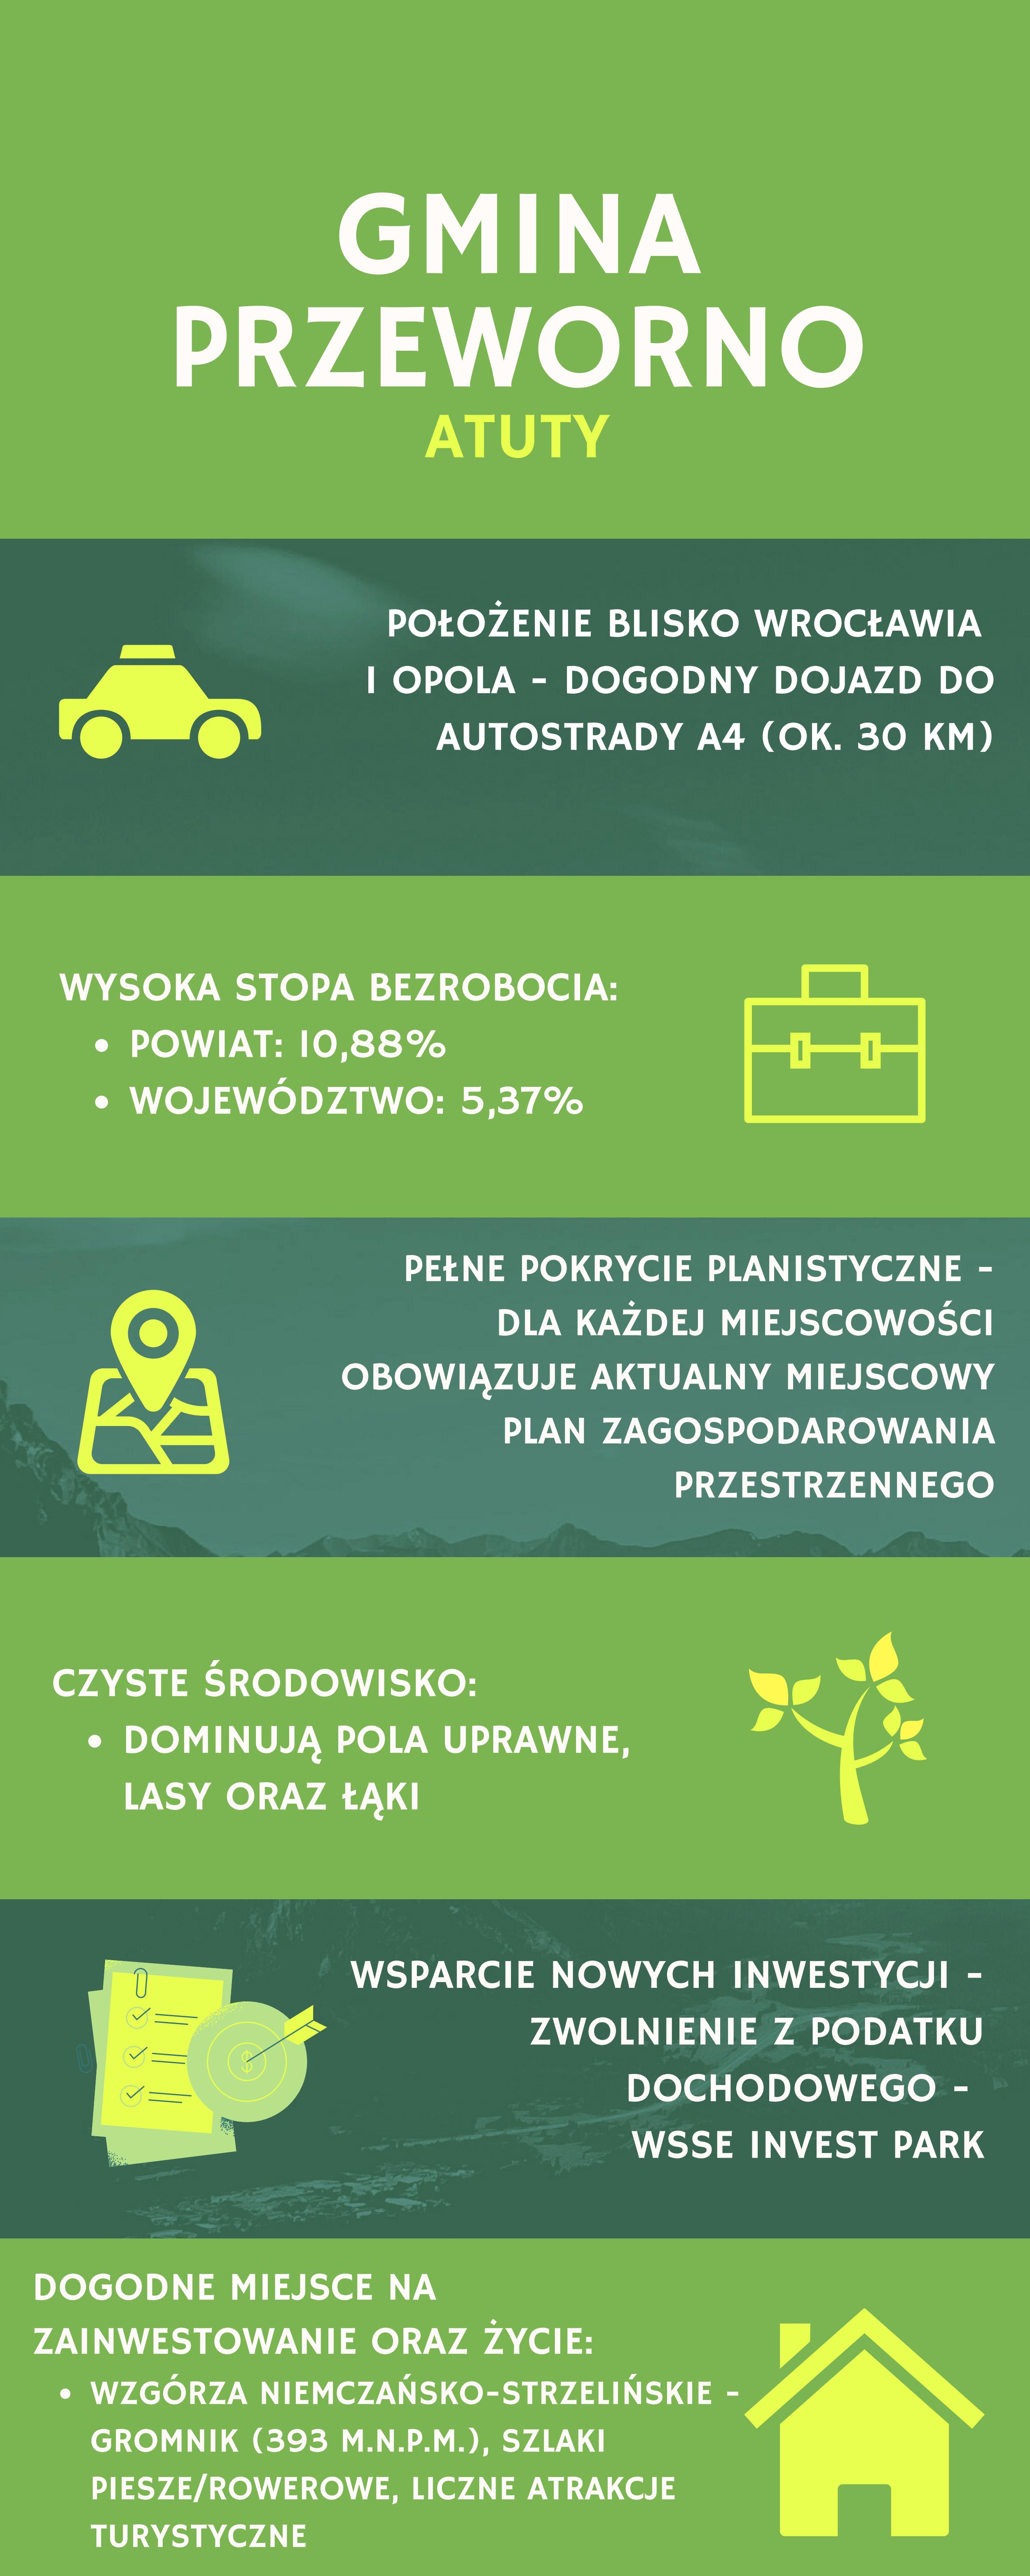 Obraz dokumentu w formie graficznej - atuty gminy - 1)	położenie blisko Wrocławia i Opola - dogodny dojazd do autostrady A4 (ok. 30 km) 2)	wysoka stopa bezrobocia (w 2019 -10,8%) 3)	pełne pokrycie planistyczne - dla każdej miejscowości obowiązuje aktualny miejscowy plan zagospodarowania przestrzennego 4)	wsparcie nowych inwestycji – zwolnienie z podatku dochodowego – Wałbrzyska Specjalna Strefa Ekonomiczna „INVEST-PARK” 5)czyste środowisko